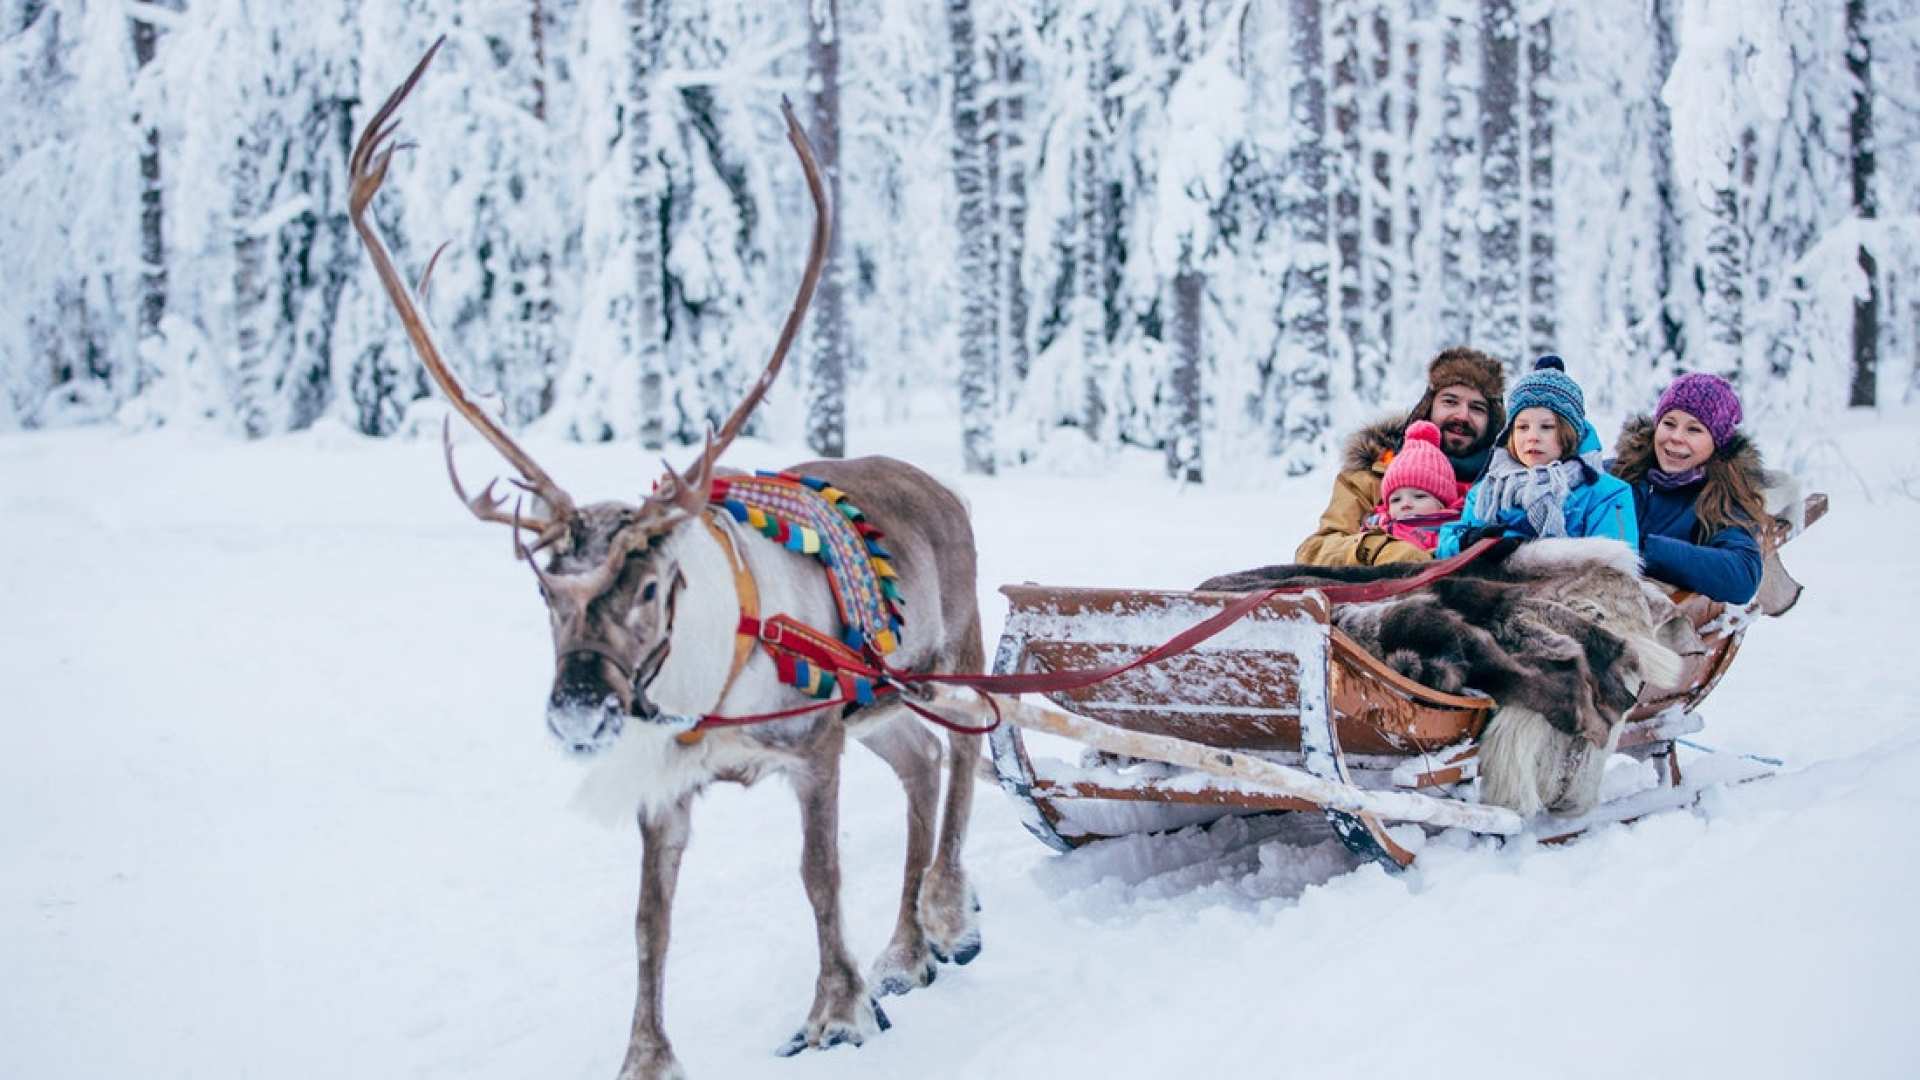  【芬蘭馴鹿雪橇探險之旅】北極圈森林馴鹿雪橇體驗＋馴鹿牧場＋拉普蘭特色小吃半日遊 